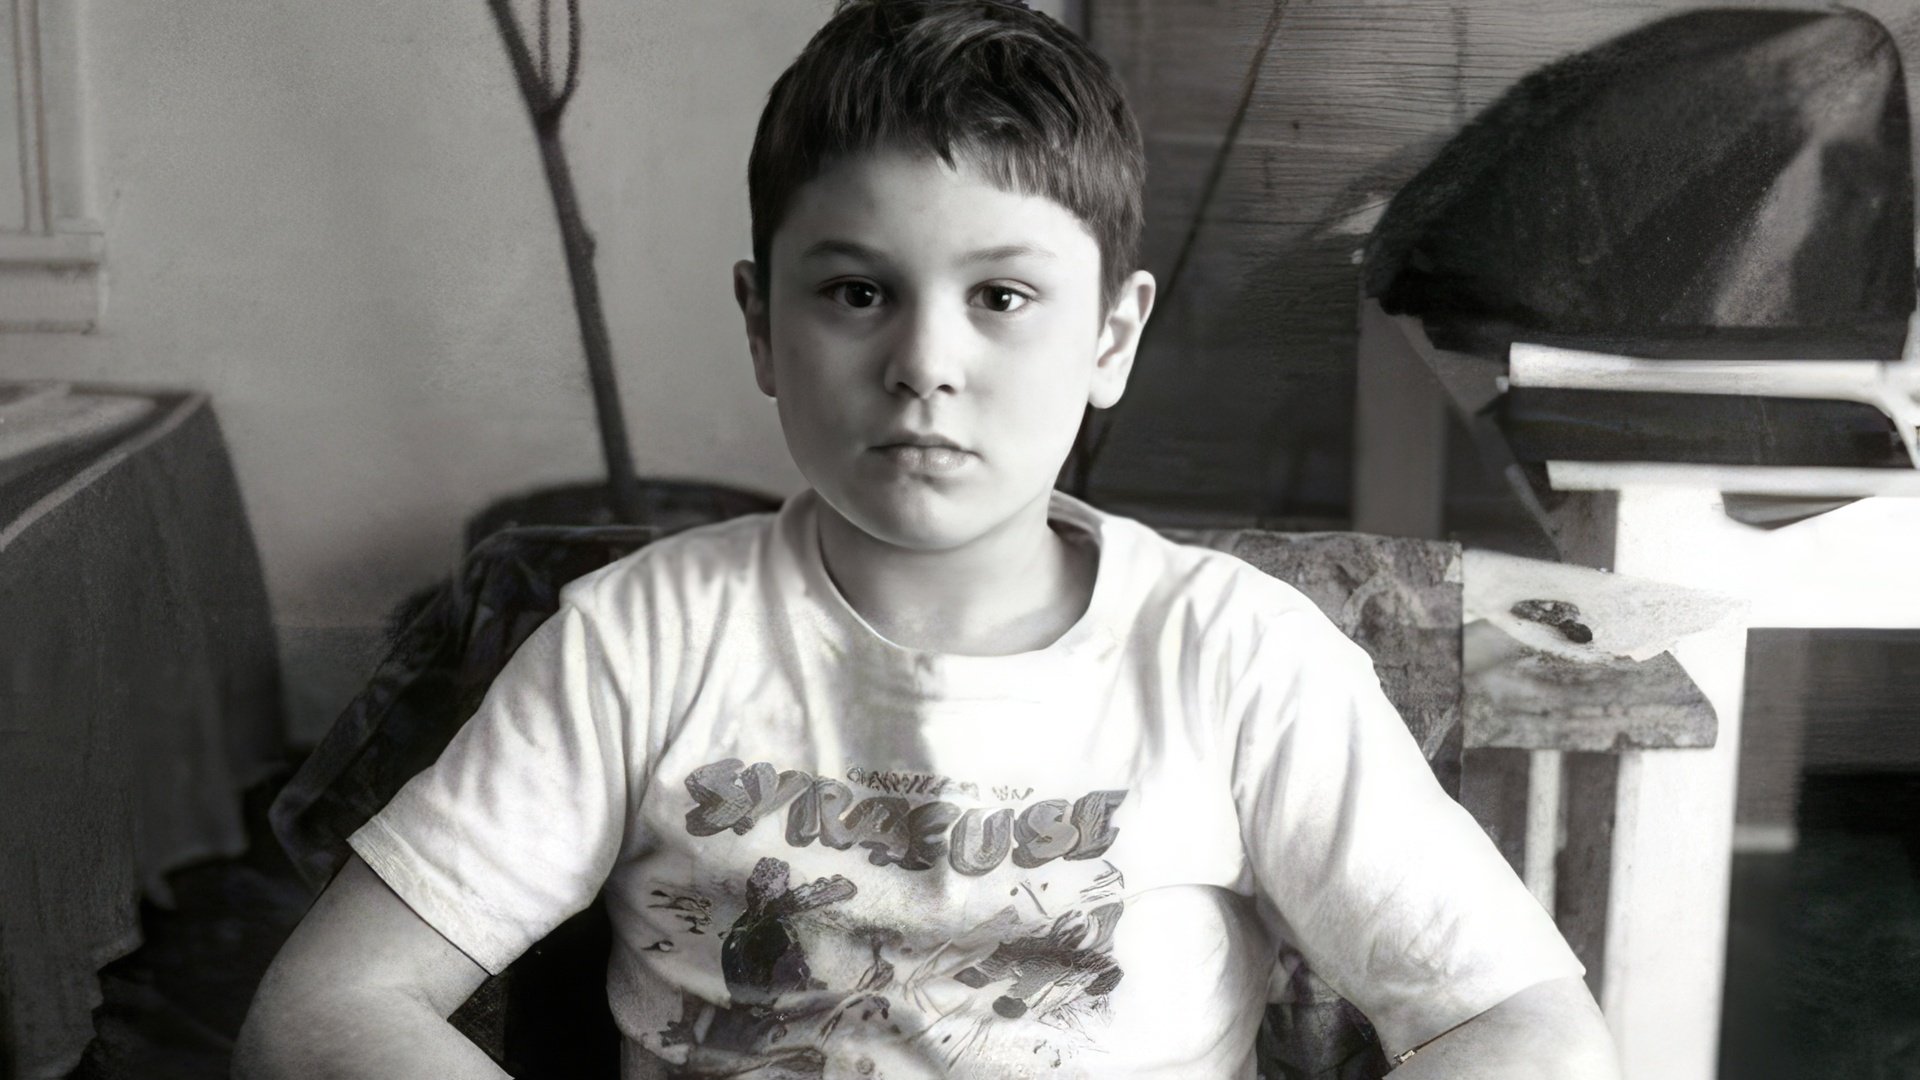 Robert De Niro as a child